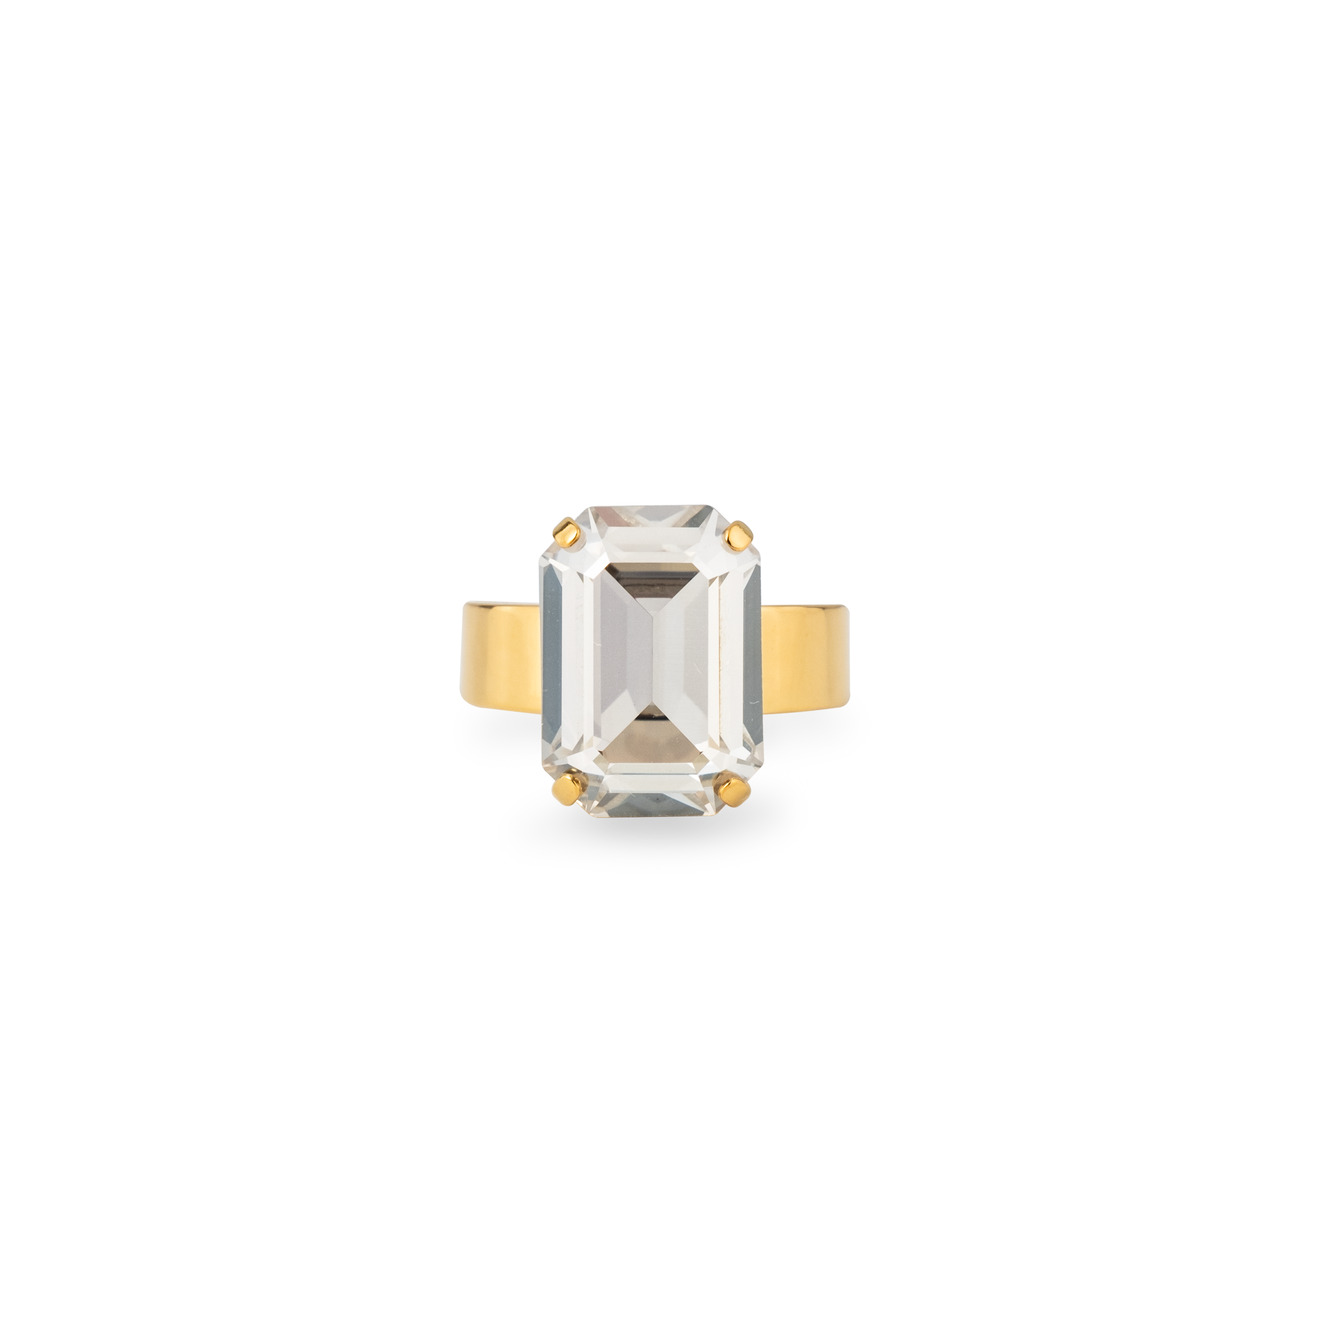 Phenomenal Studio Позолоченное кольцо с регулируемым размером Octagon Gold